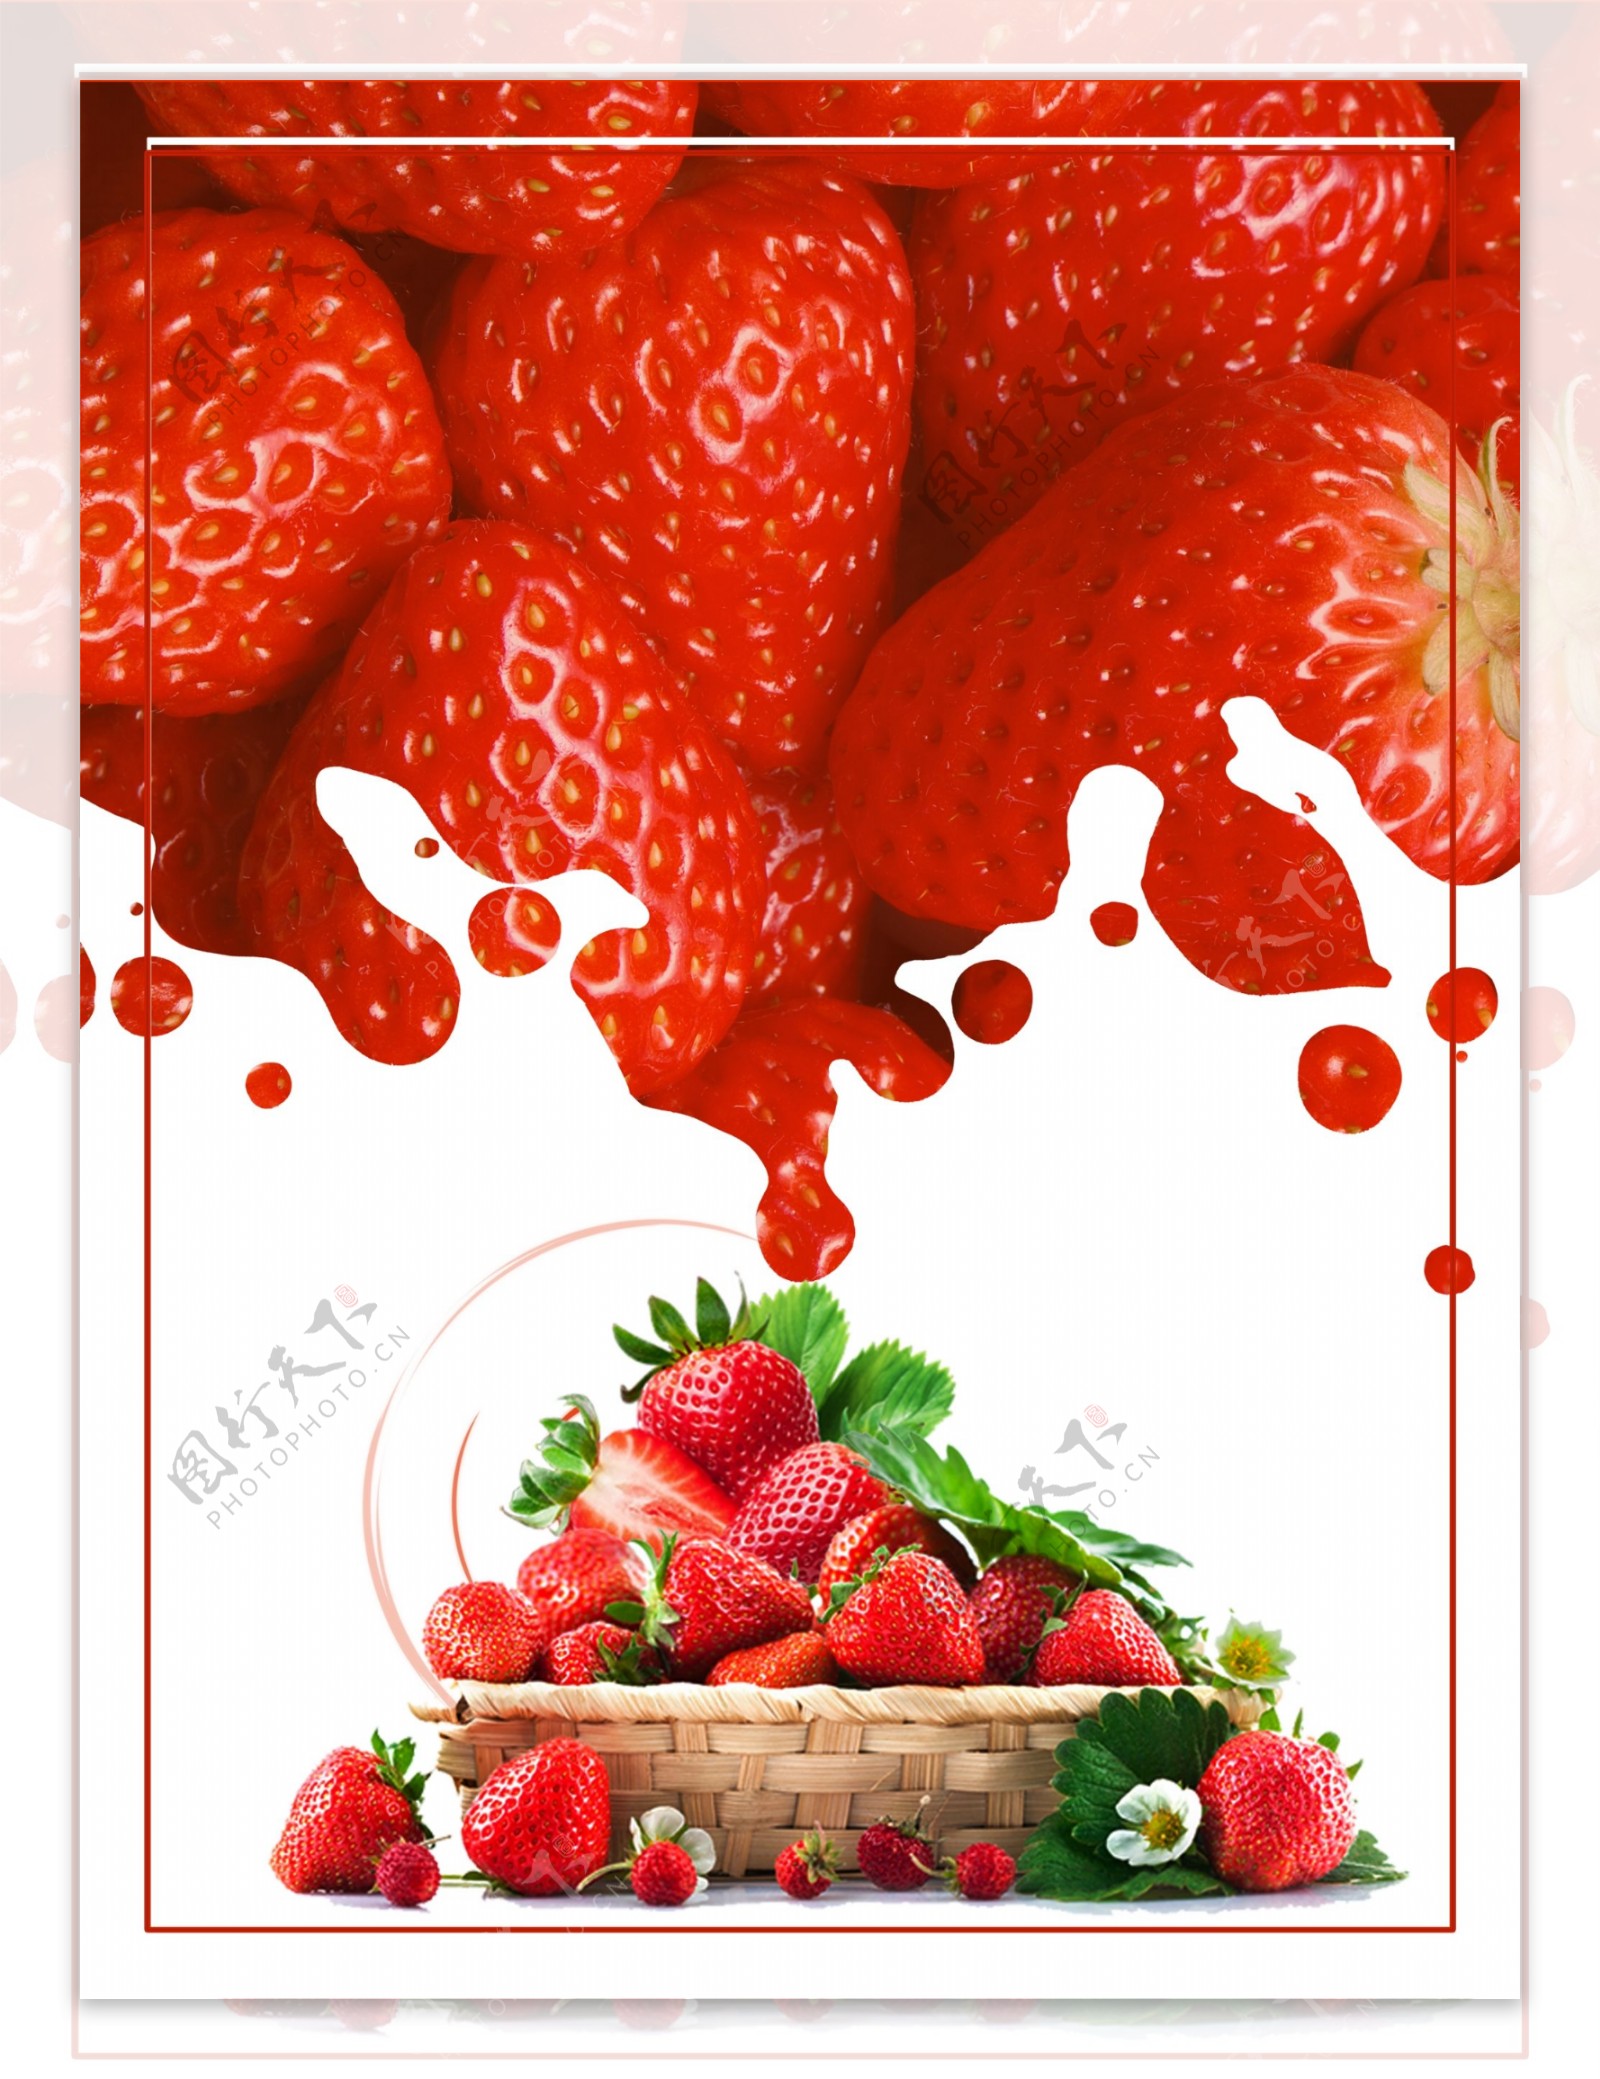 草莓宣传海报